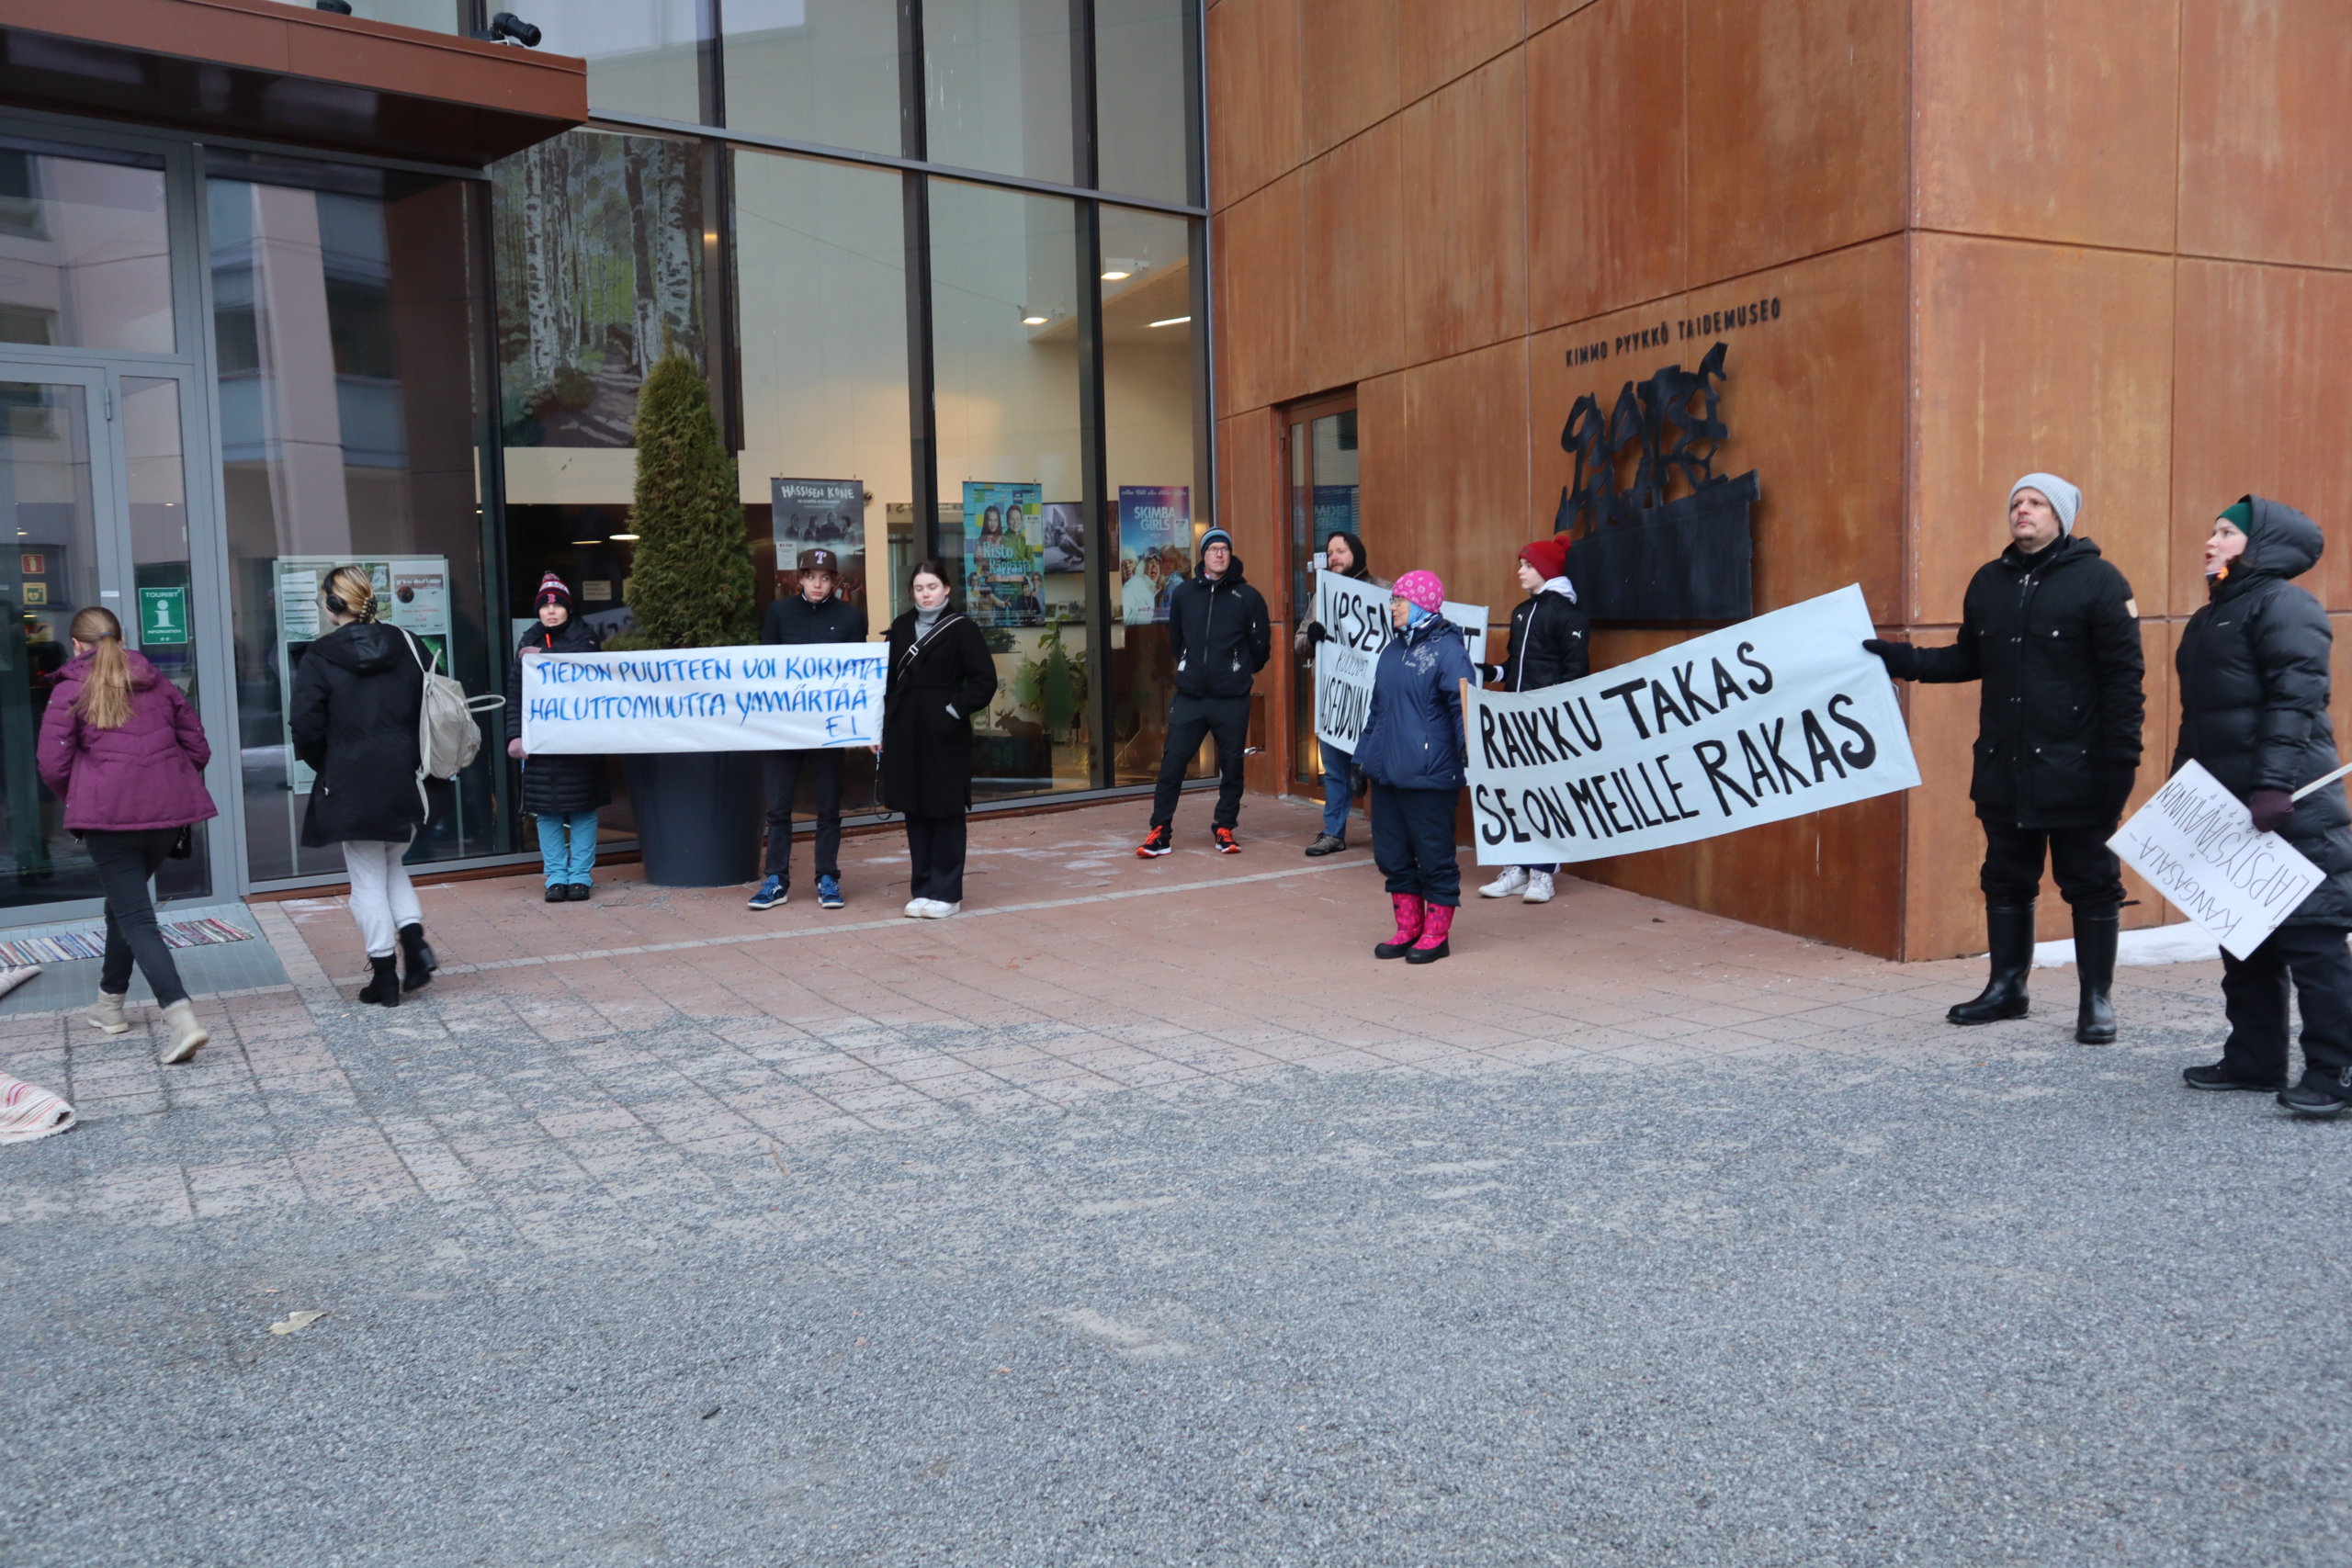 Mielenosoitus järjestettiin Kangasala-talon edustalla ennen valtuuston kokousta, jossa päätetään Raikun koulun kohtalosta. Kuva: Heli Keskinen